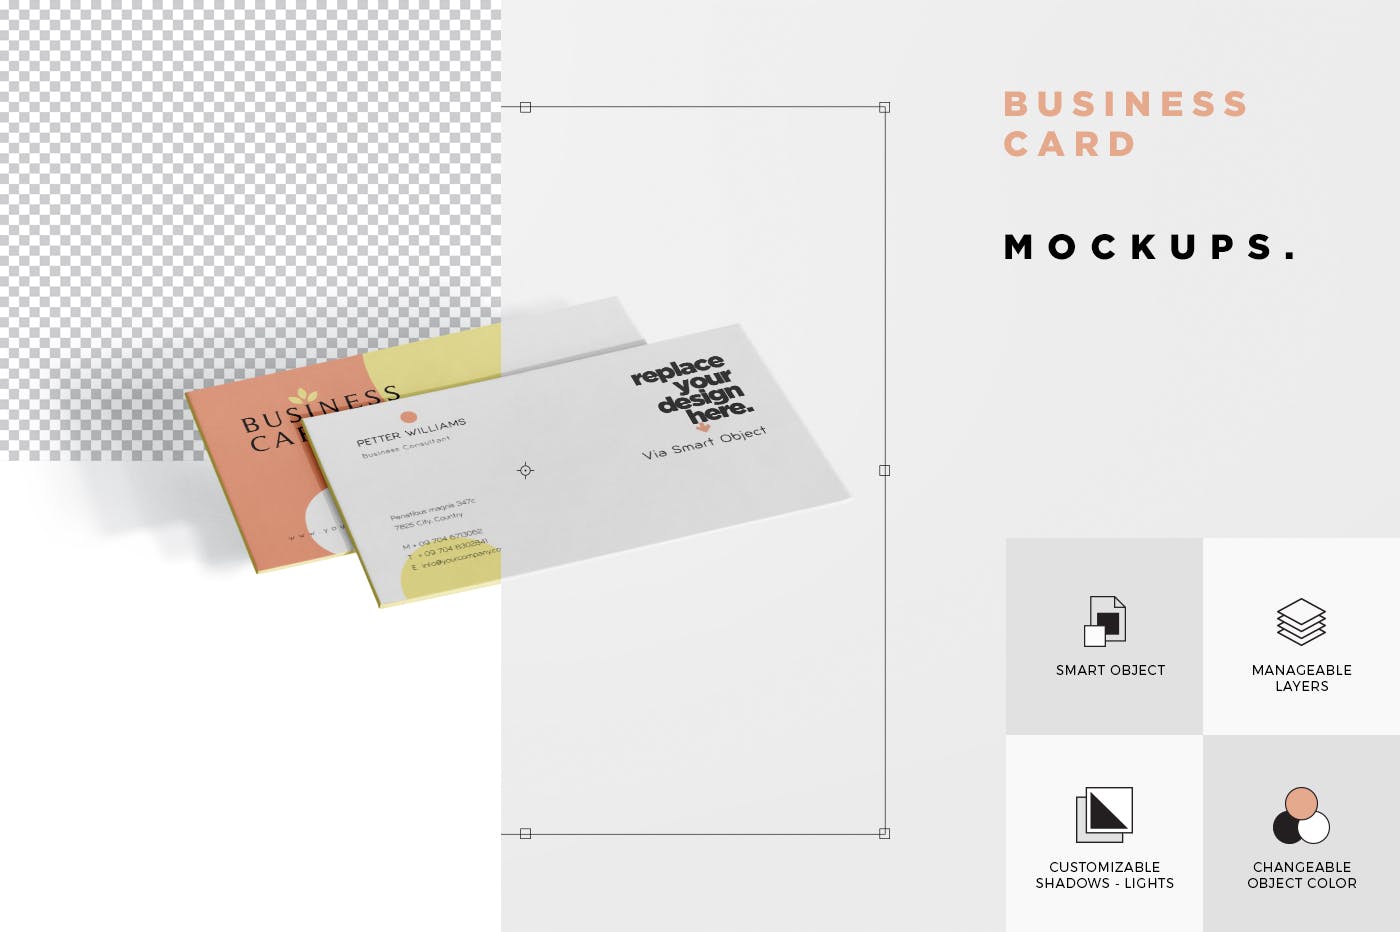 创意企业名片设计阴影效果图蚂蚁素材精选 Business Card Mock-Ups插图(5)